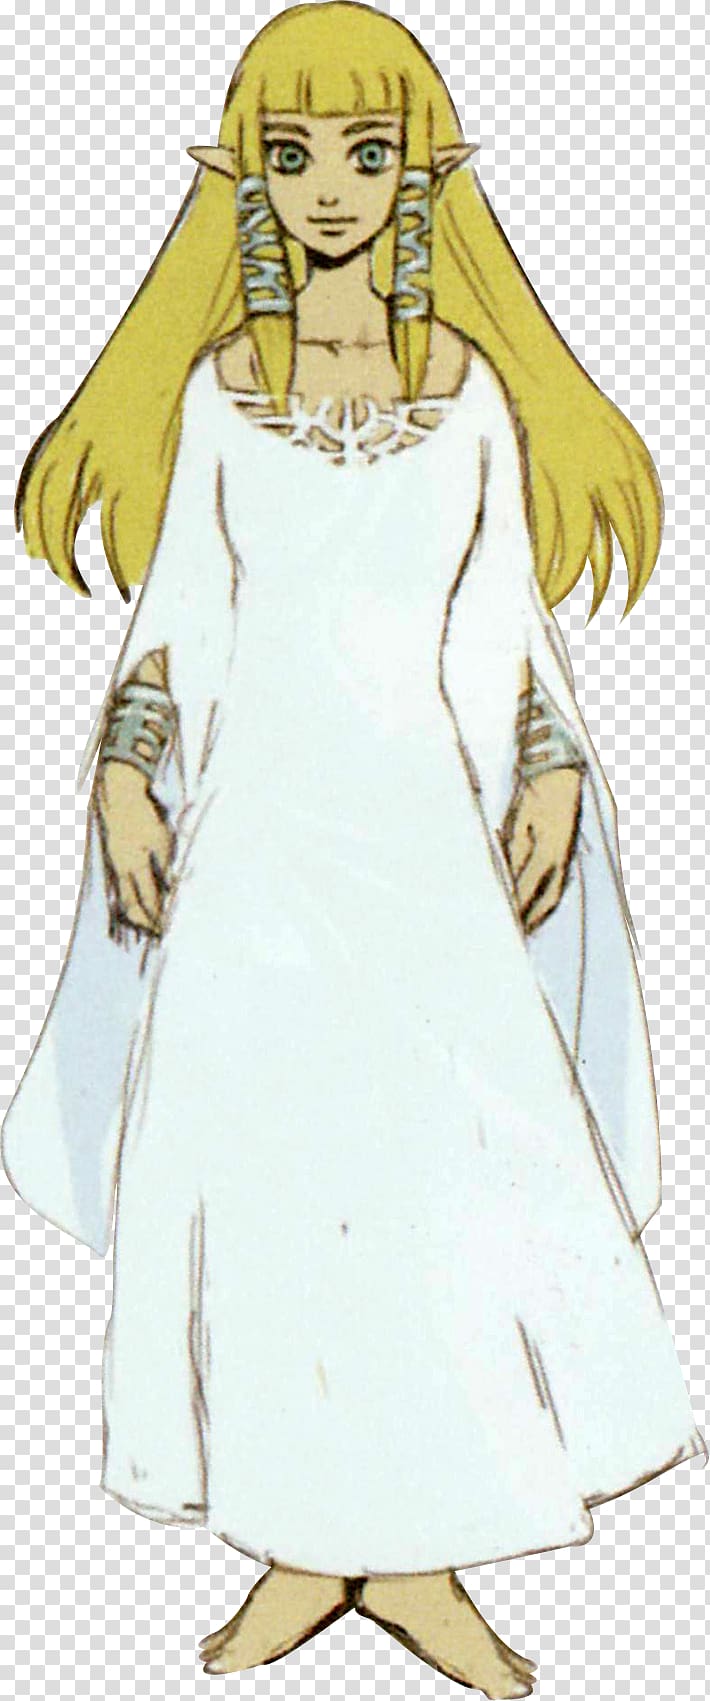 The Legend of Zelda: Skyward Sword Princess Zelda The Legend of Zelda: Ocarina of Time Link, Goddess transparent background PNG clipart